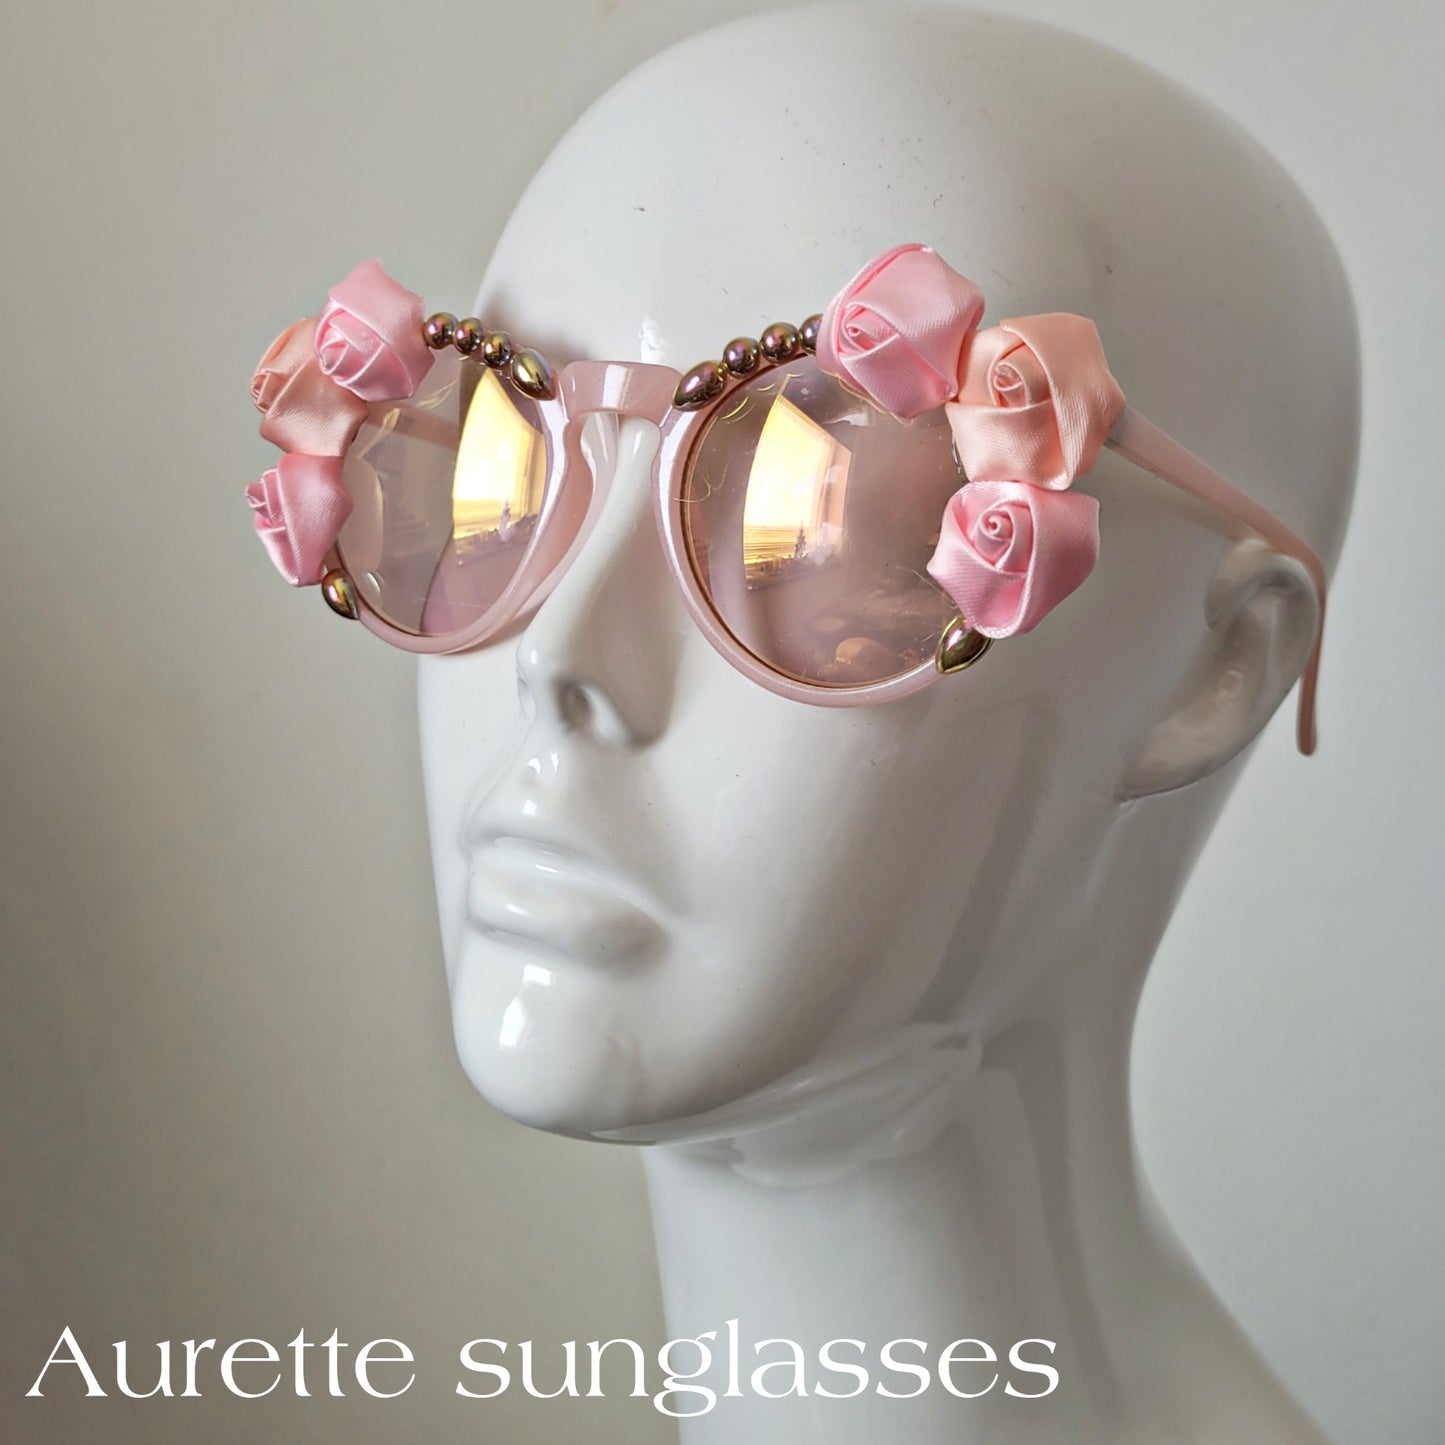 Á vallians coeurs riens impossible Collection: The Aurette sunglasses